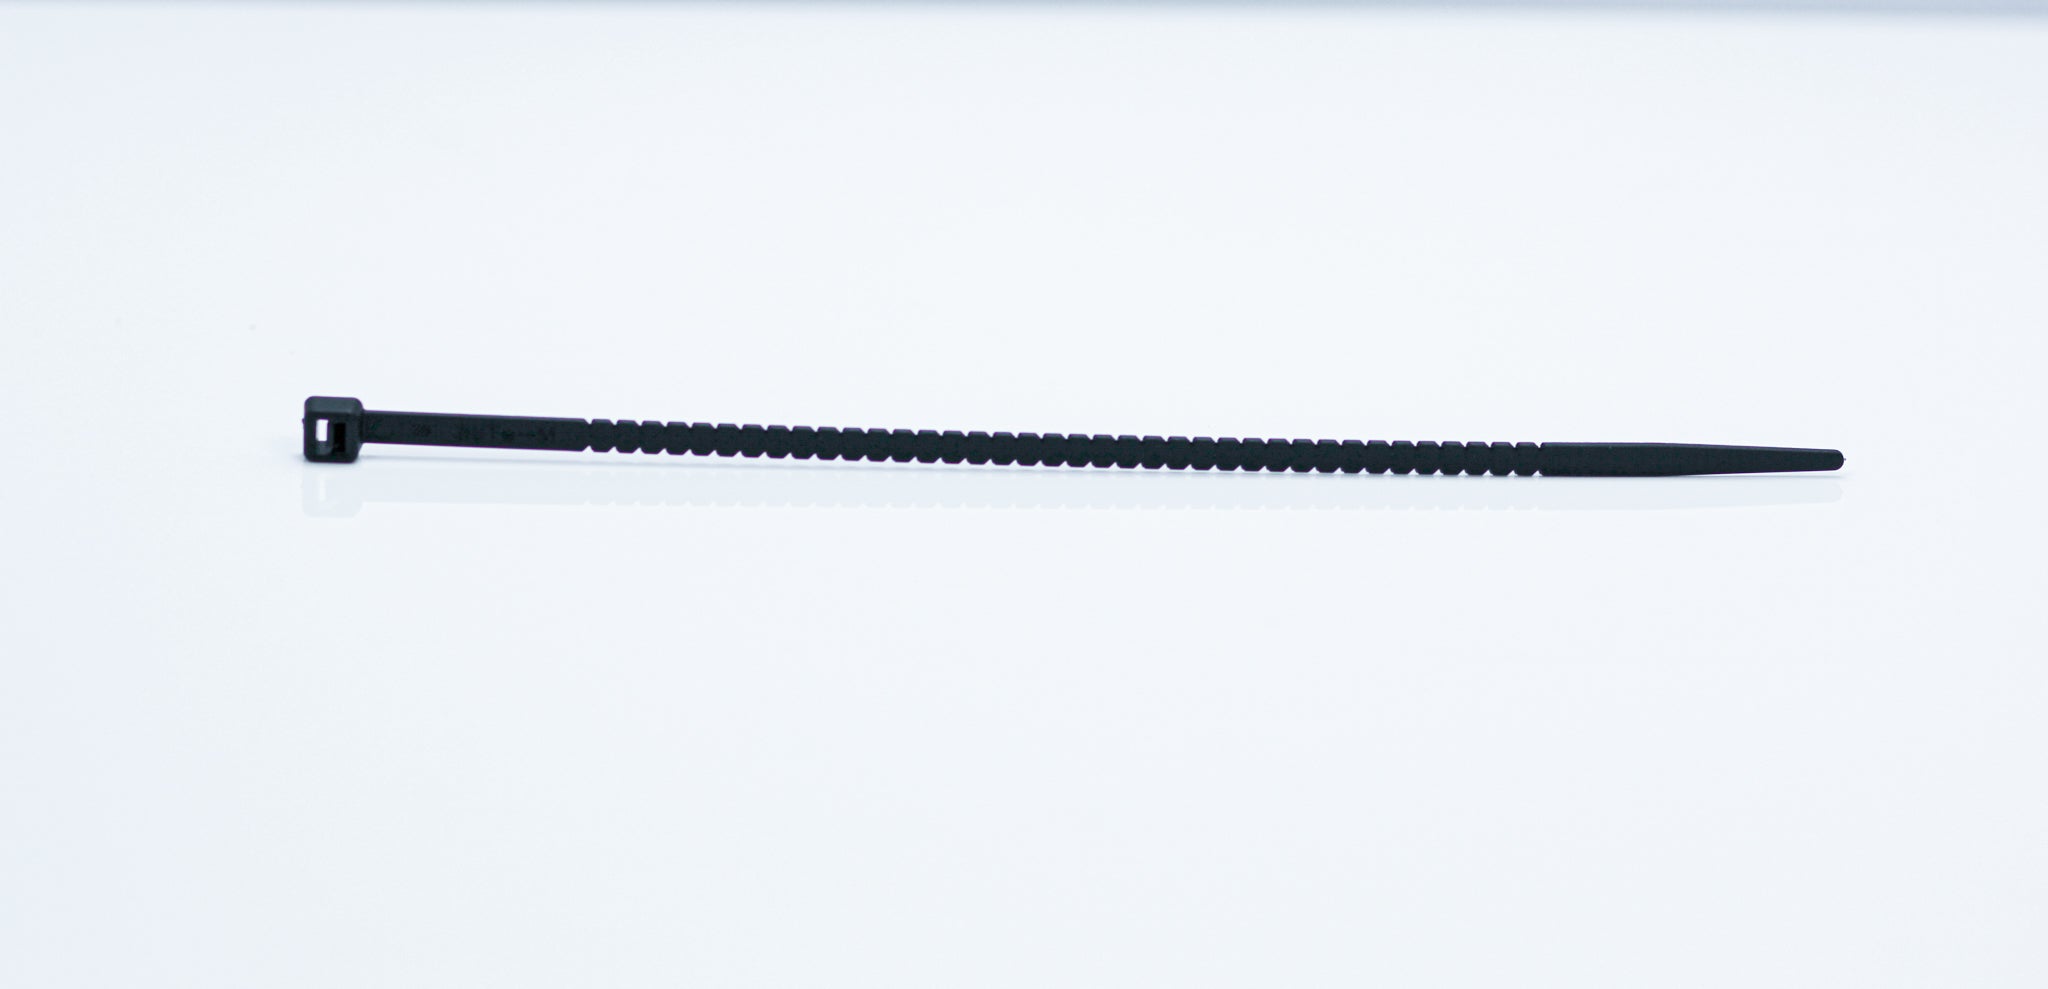 6 Light Duty Zip-Tite Cable Tie - Black - Tite-Reach